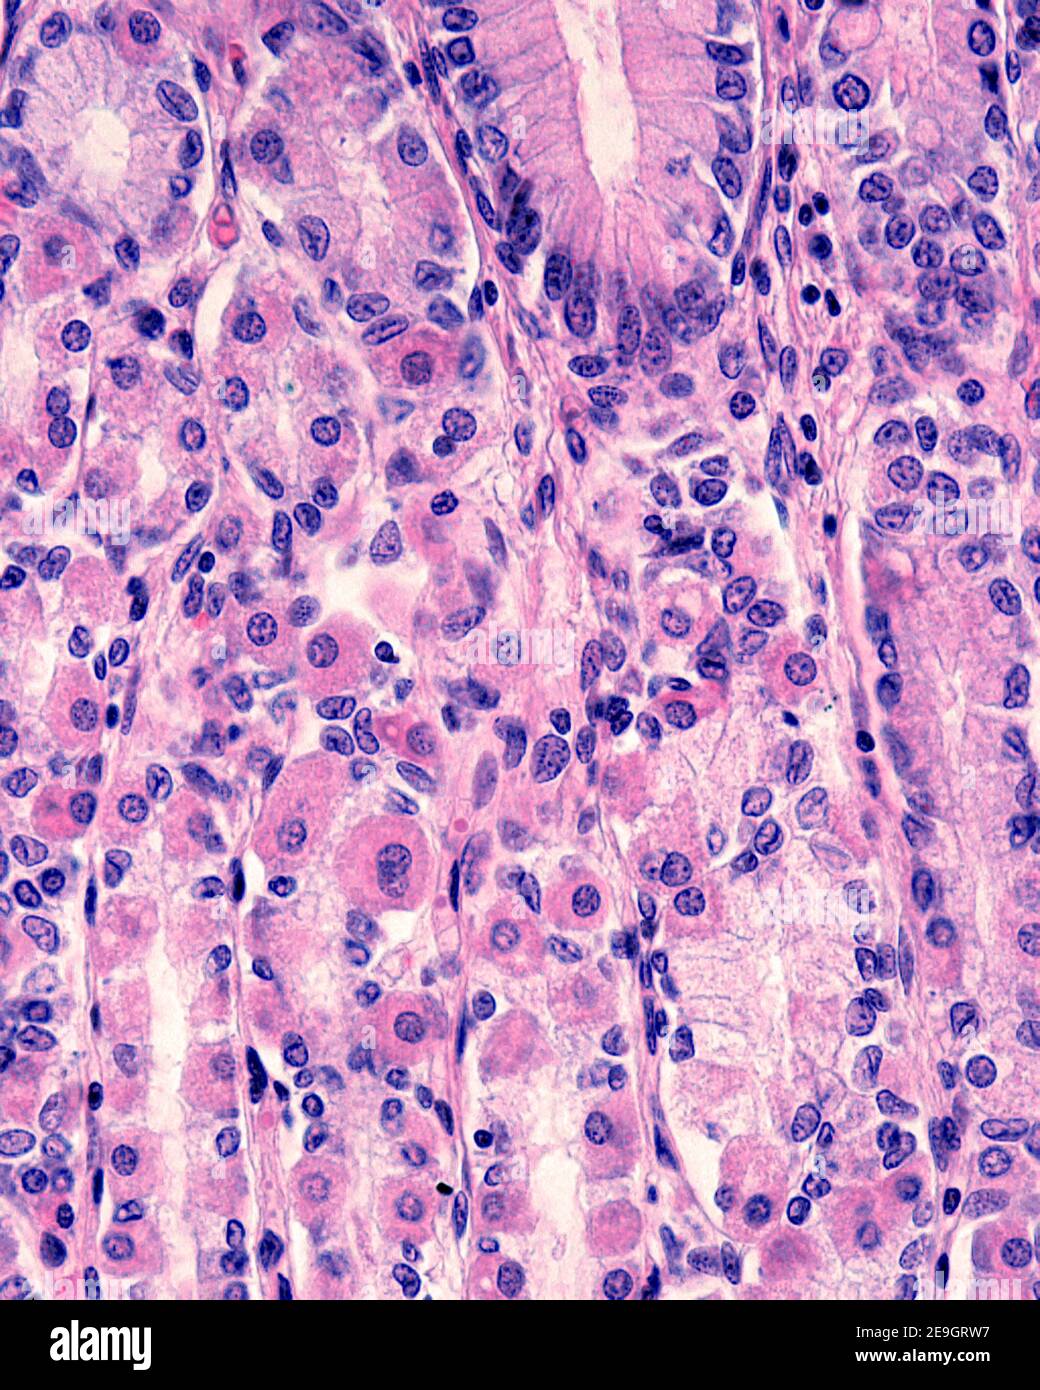 Parietale (oxyntische) Zellen sind ein Zelltyp, der sich in den fundischen Drüsen des Magens befindet. Sie haben ein eosinophiles (rosa) Zytoplasma. Stockfoto